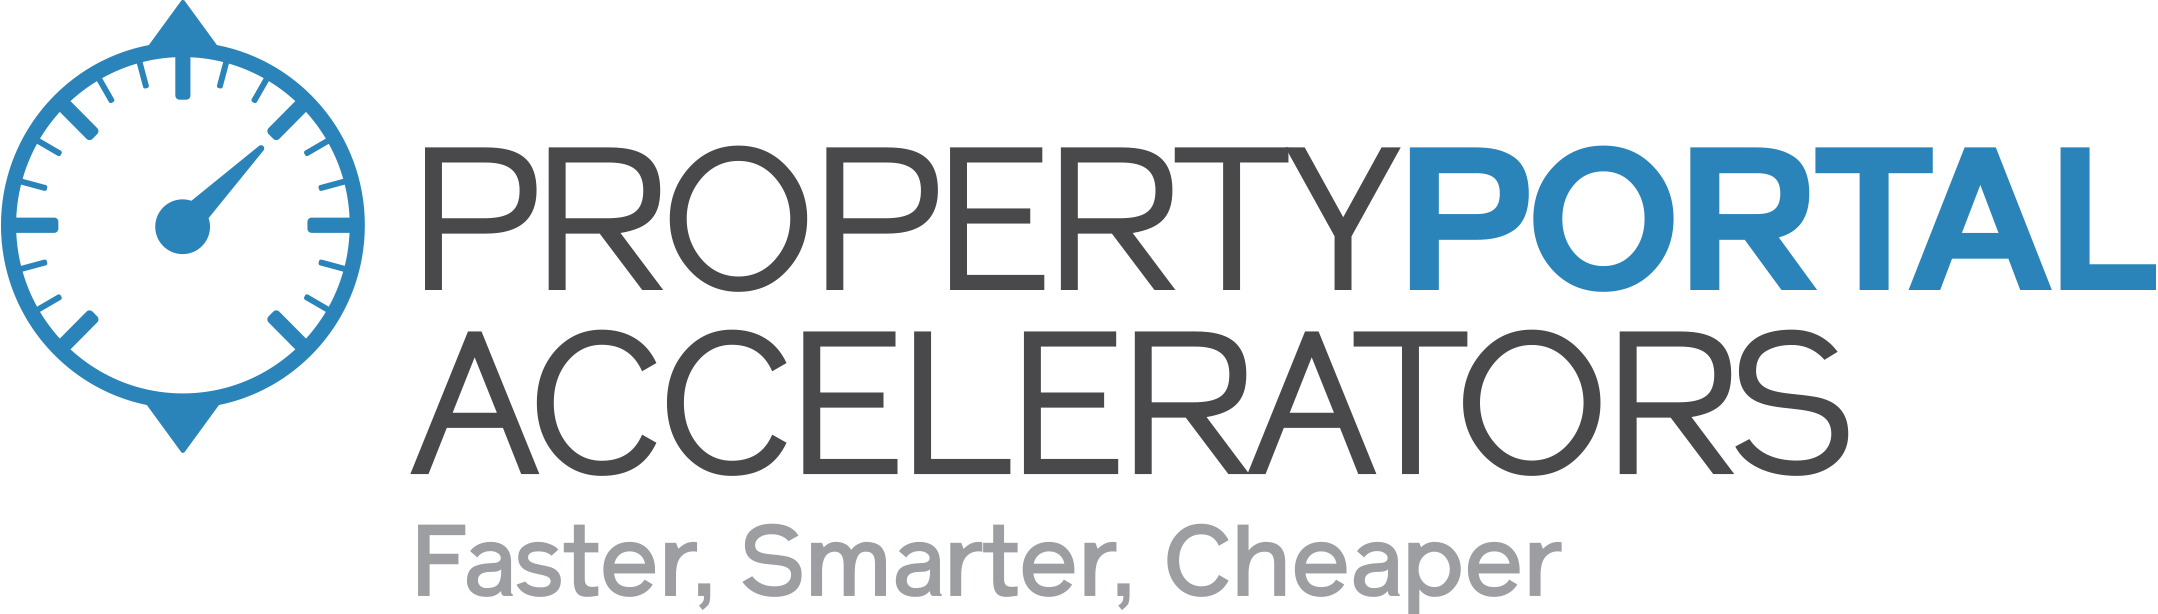 Property Portal Accelerators